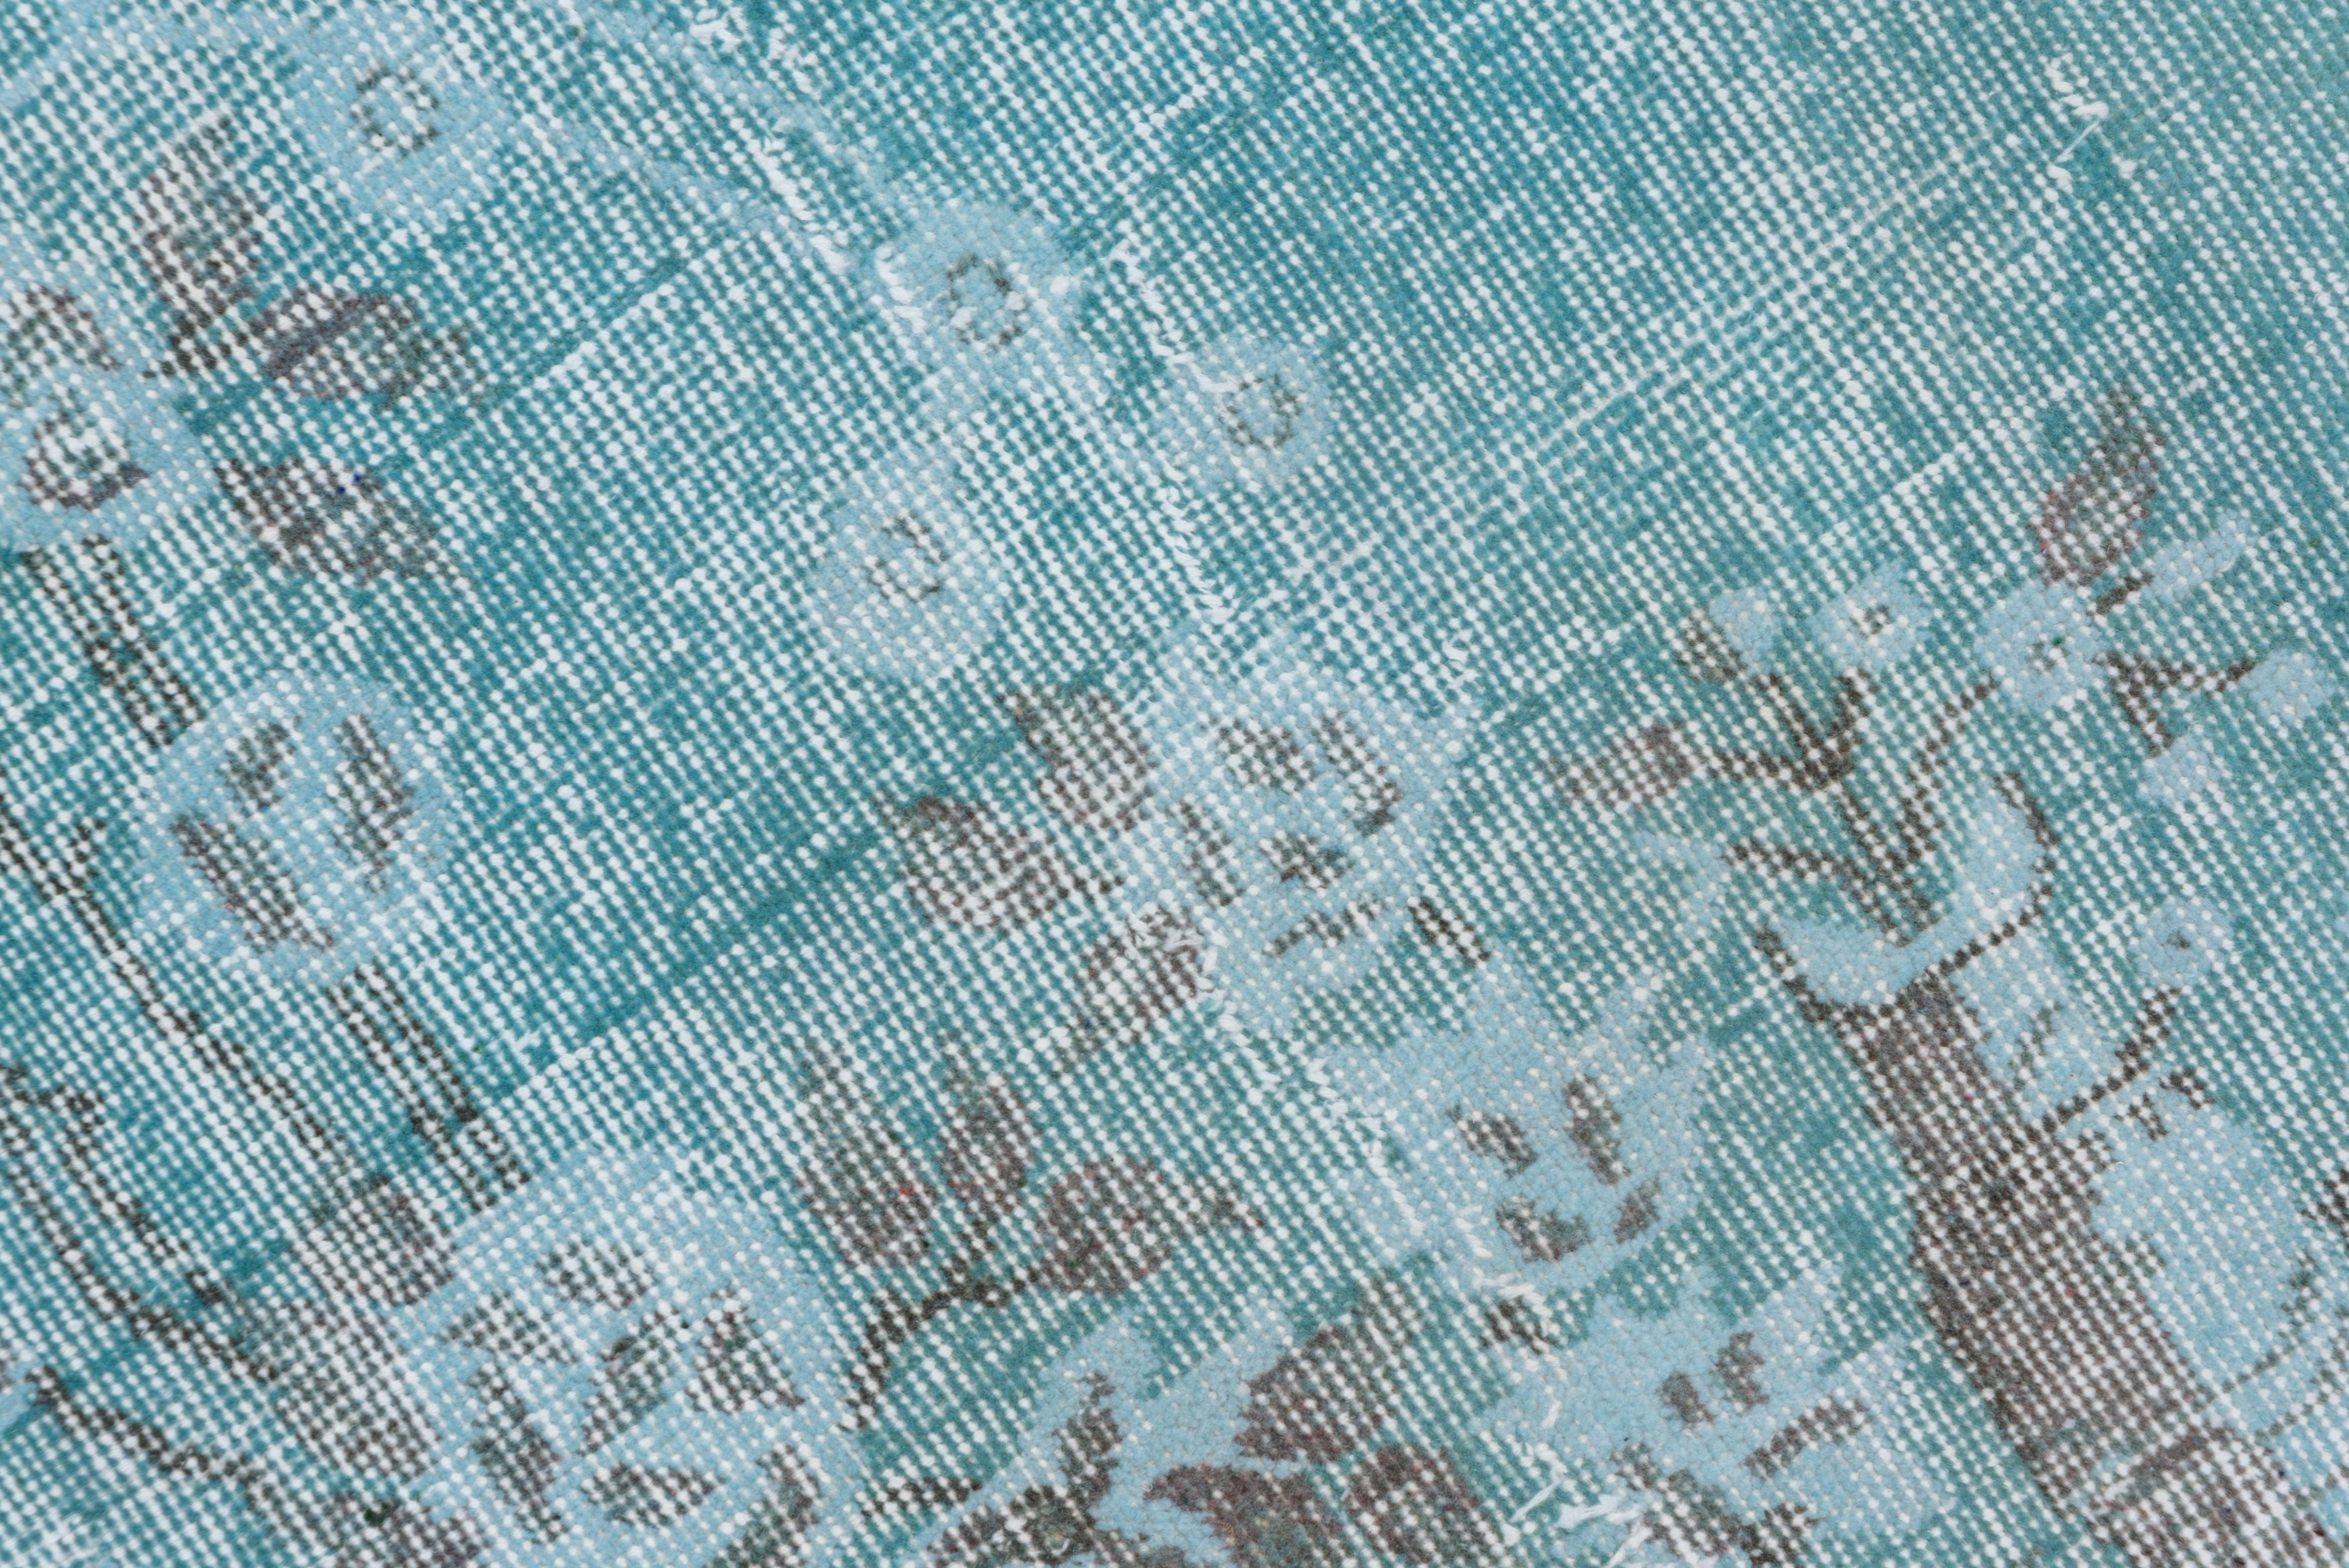 Dieser hellceladonfarbene, durchgefärbte Teppich in beschädigtem Zustand zeigt mehrere Spalten mit Grunddiagonalen und Zickzacklinien, die der rostfarbenen Bordüre einen eigenwilligen Charakter verleihen.
